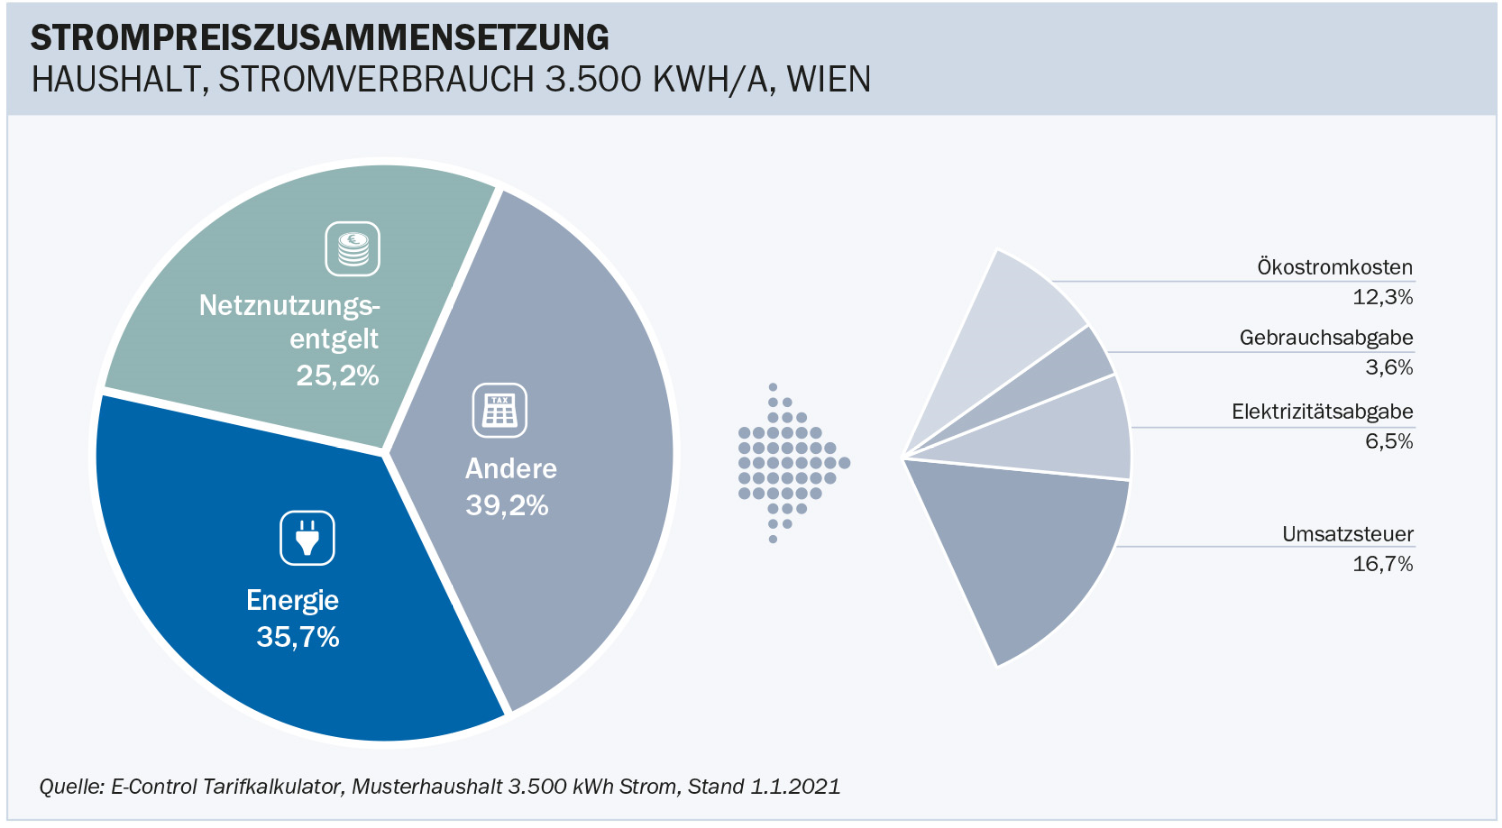 Abb. 2: Strompreiszusammensetzung Haushalt, Wien